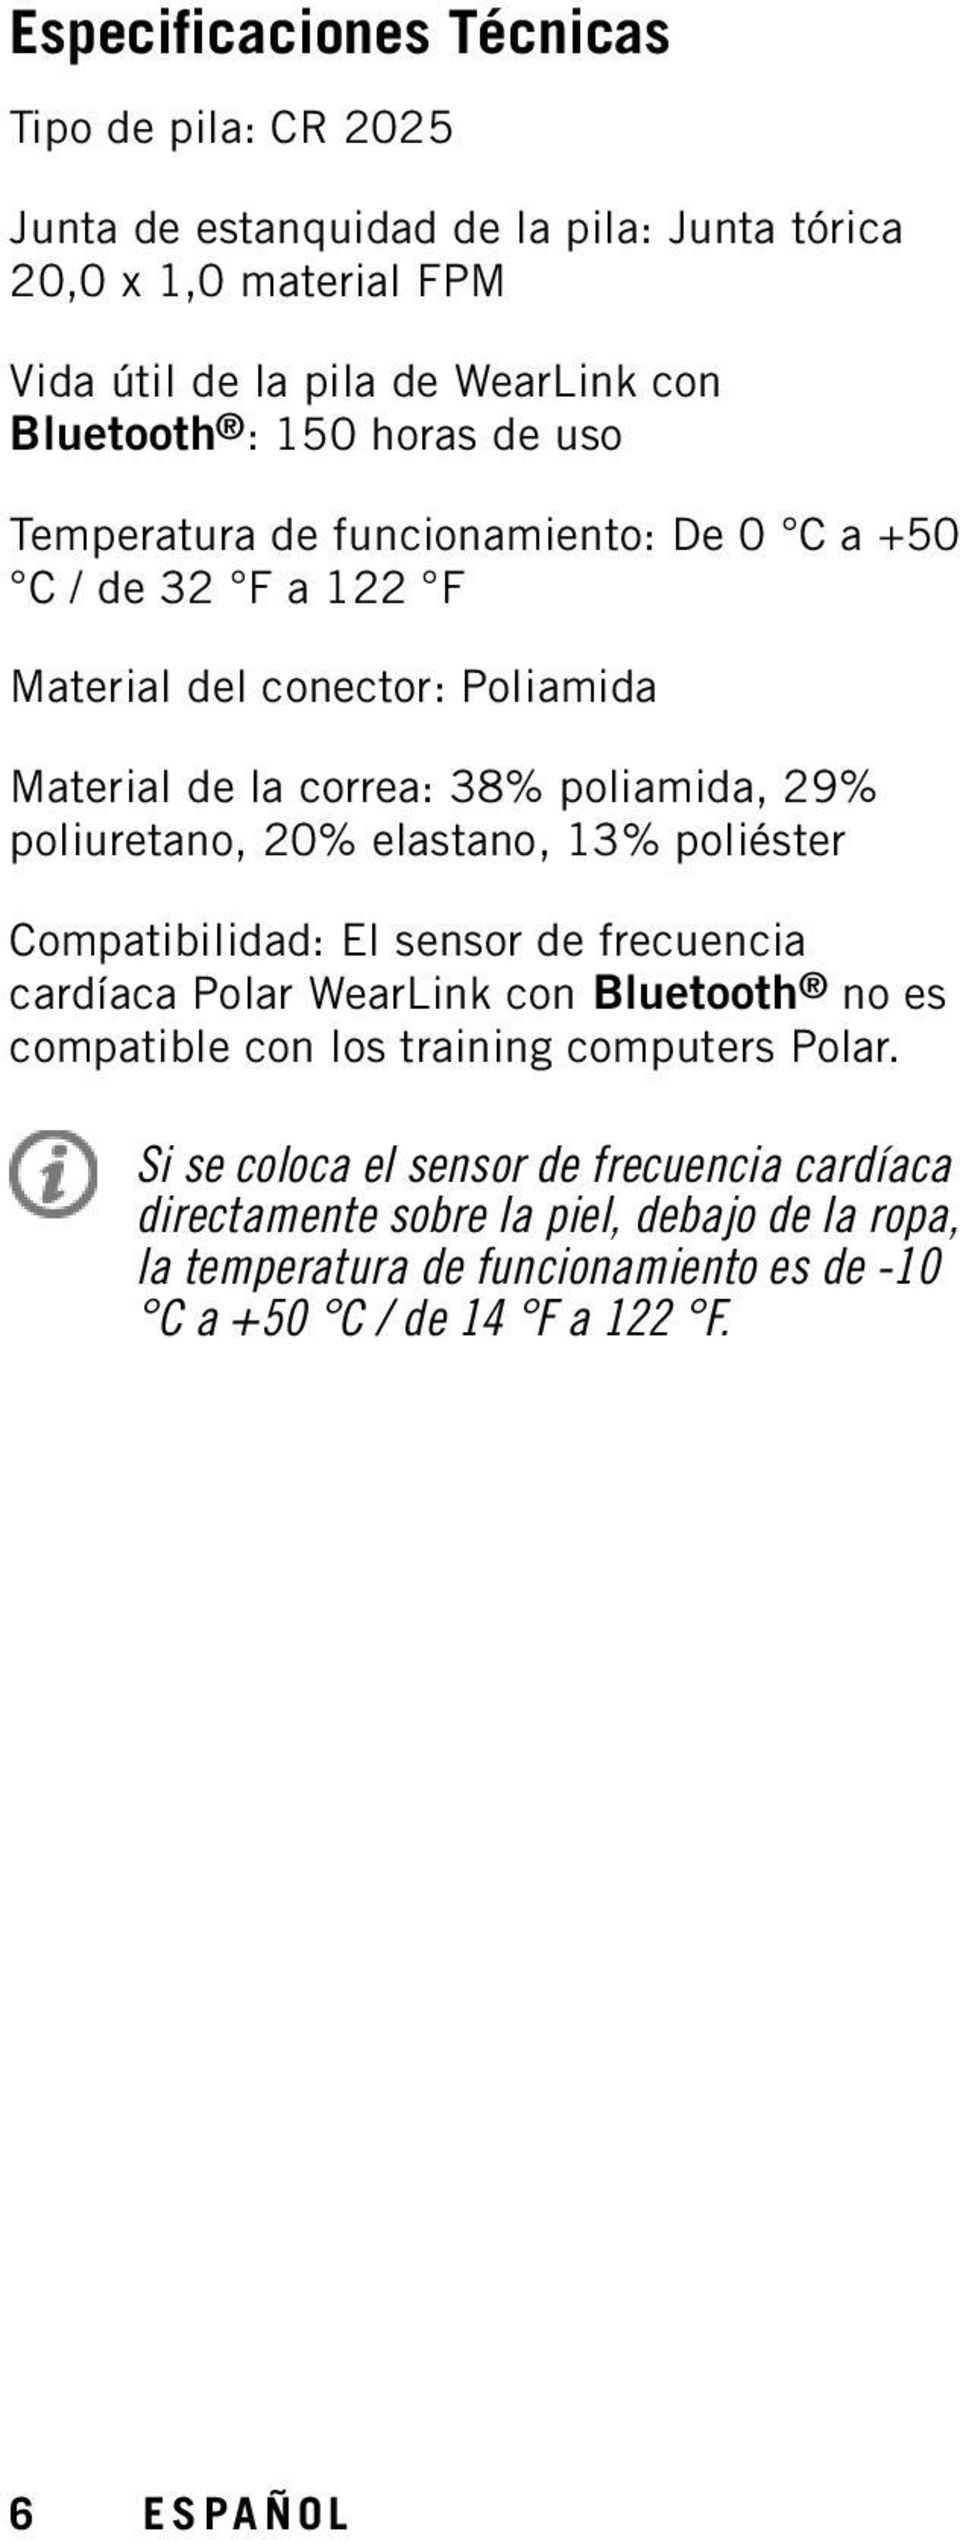 poliuretano, 20% elastano, 13% poliéster Compatibilidad: El sensor de frecuencia cardíaca Polar WearLink con Bluetooth no es compatible con los training computers